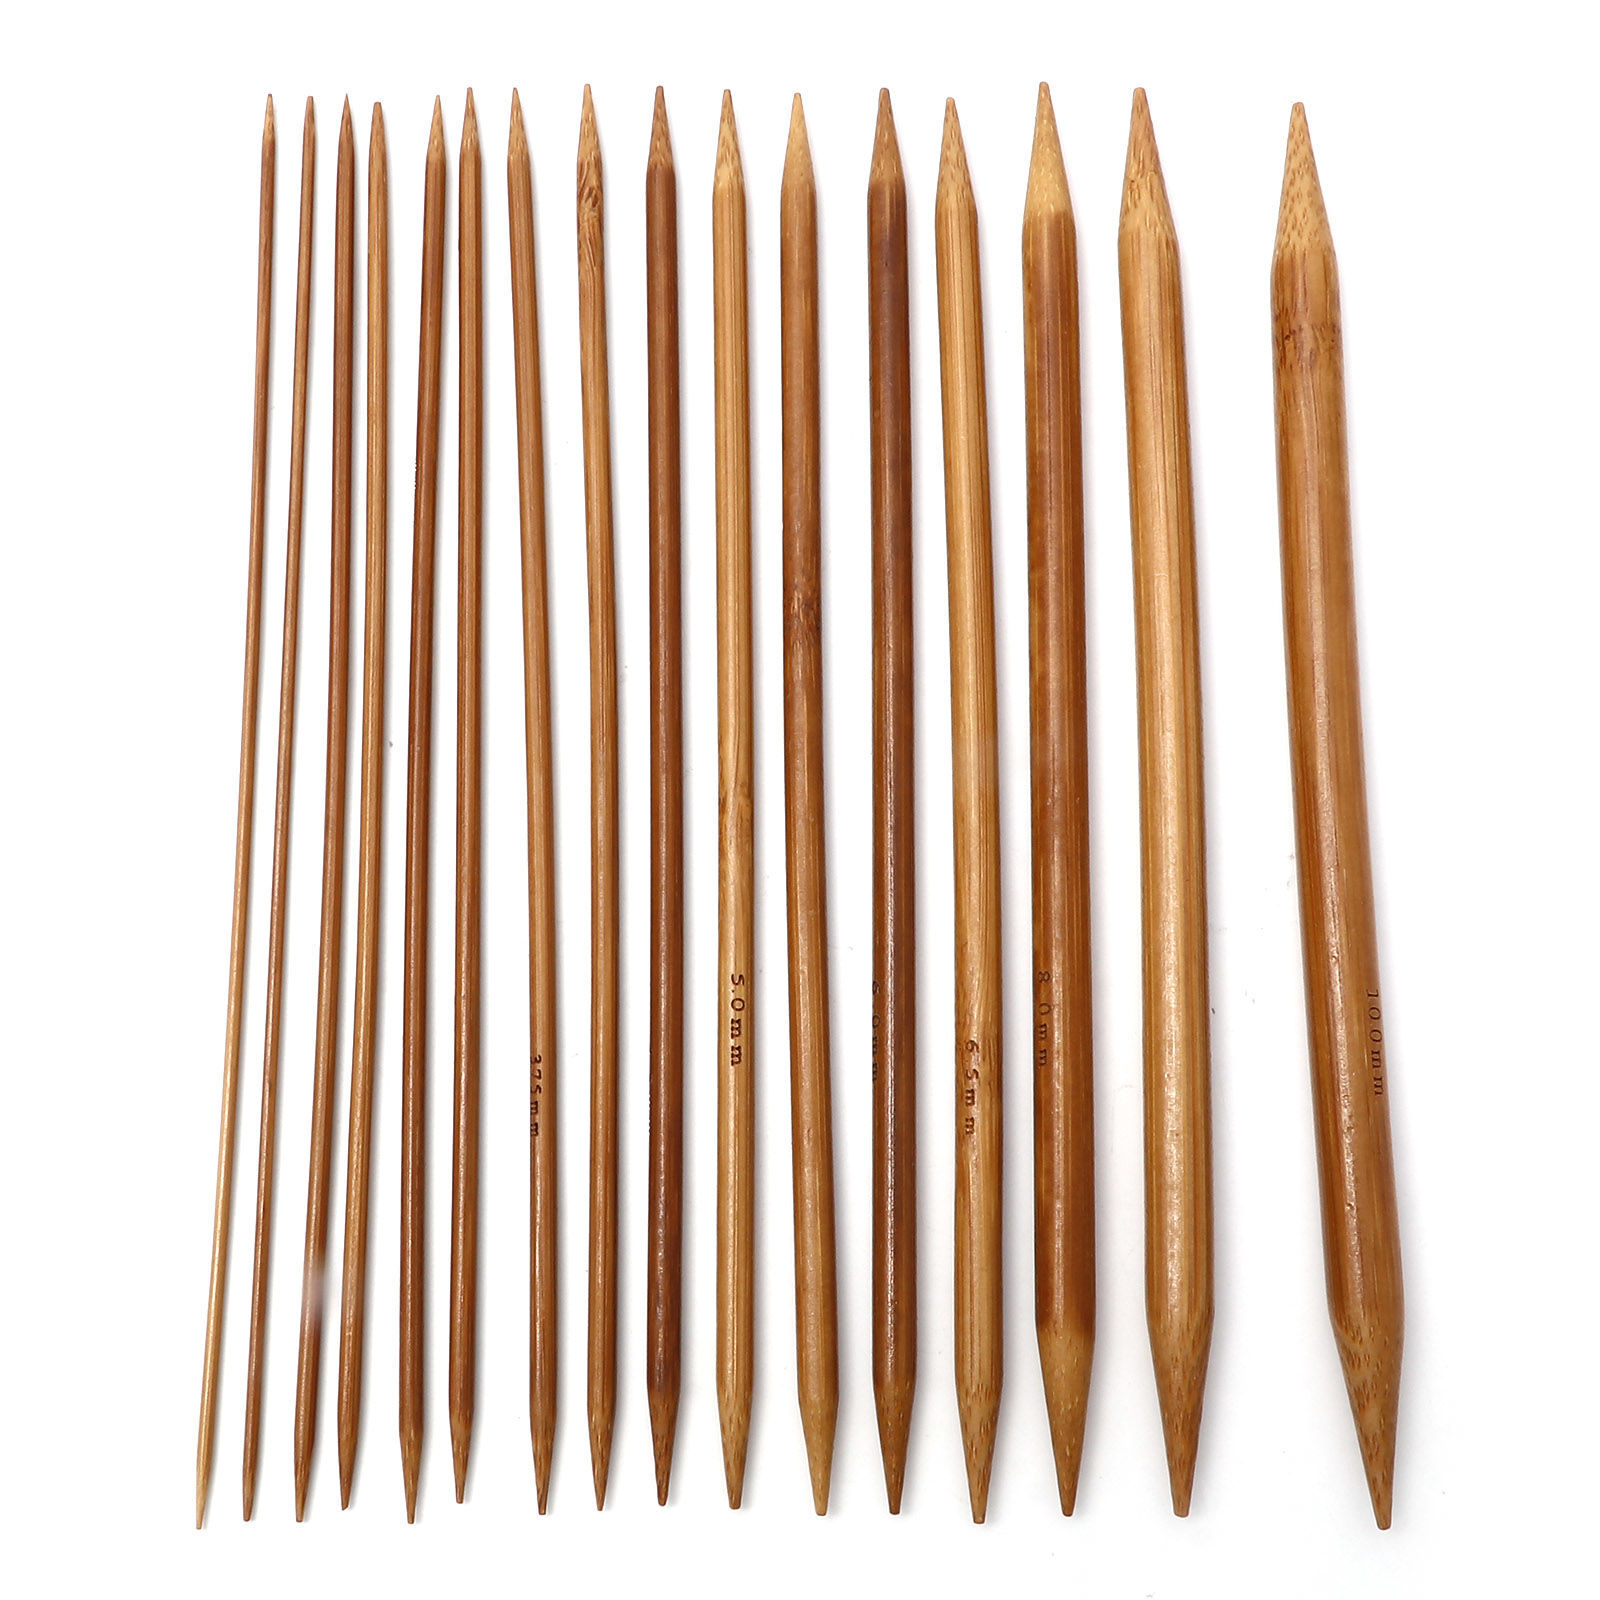 Bild von Bambus Stricknadel mit Doppelte Öse Braun 20cm lang, 5 Stücke